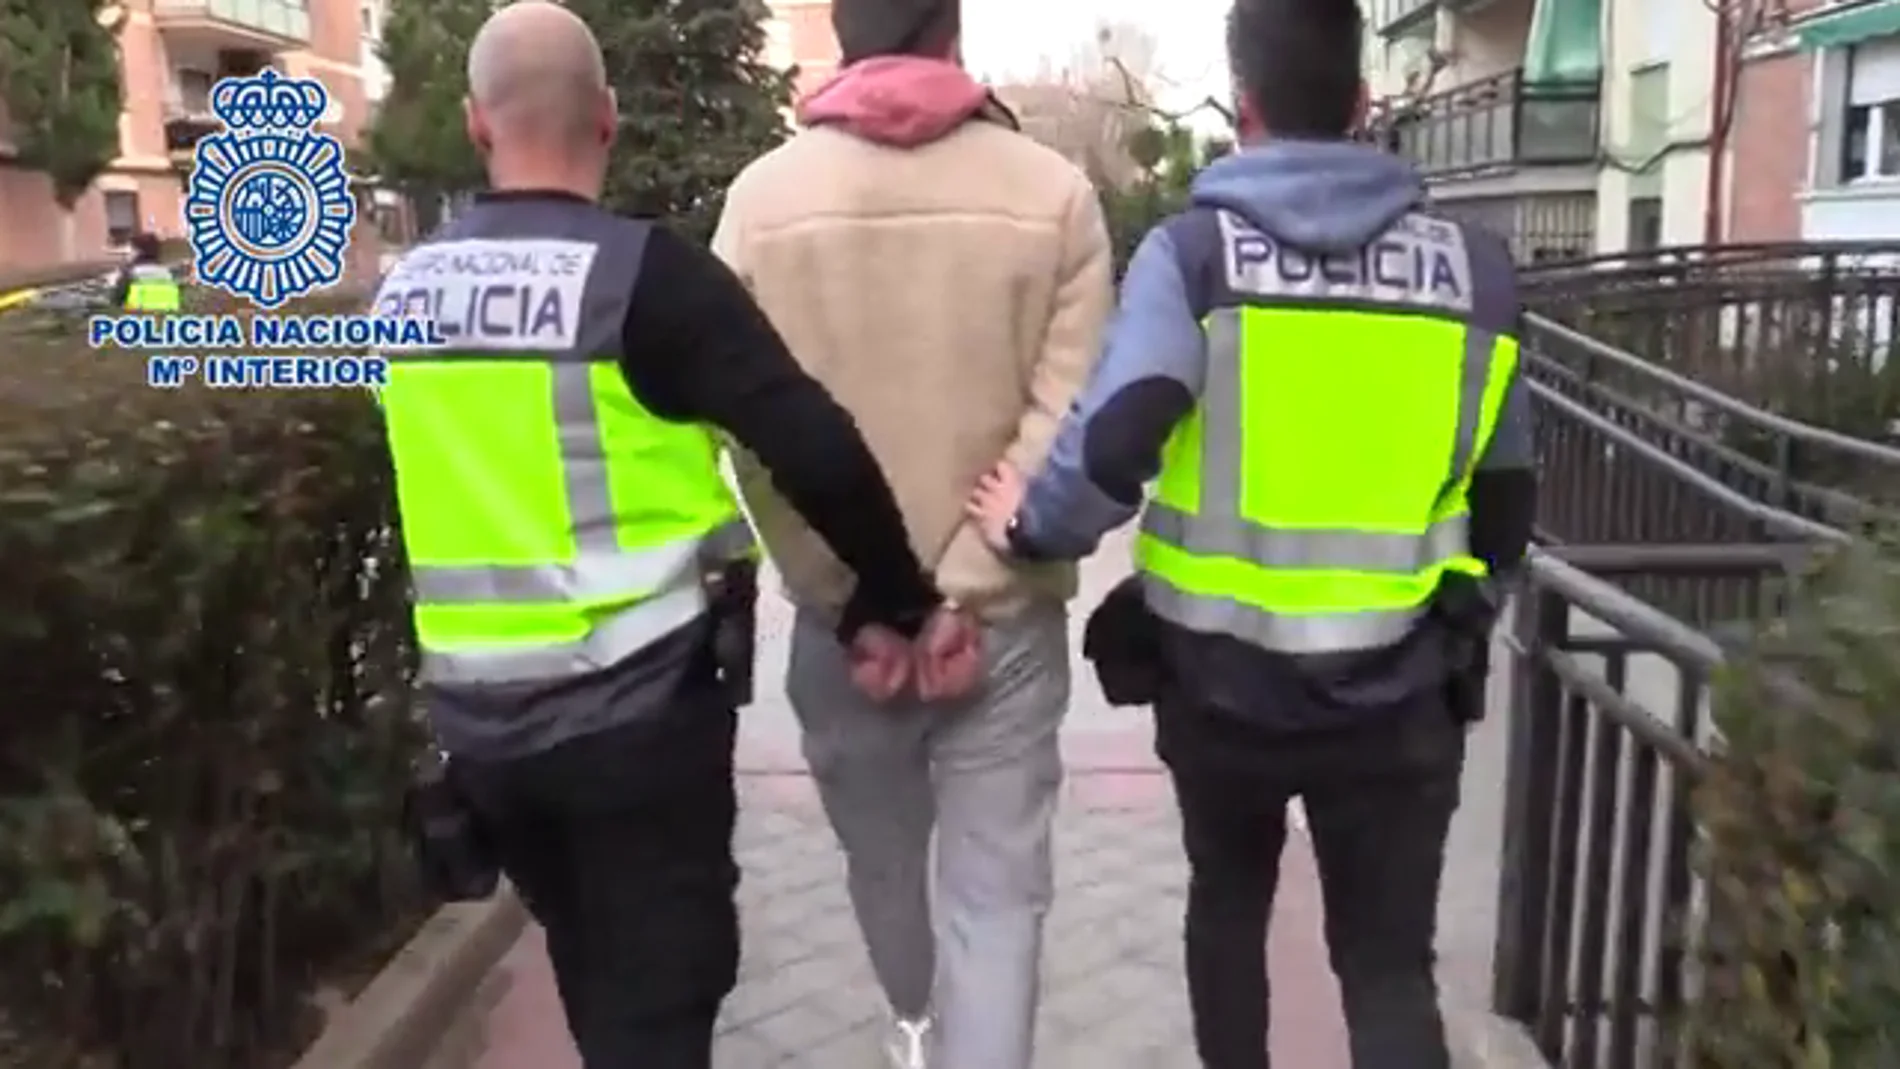 La Policía detiene al presunto estafador y registra su vivienda en Madrid